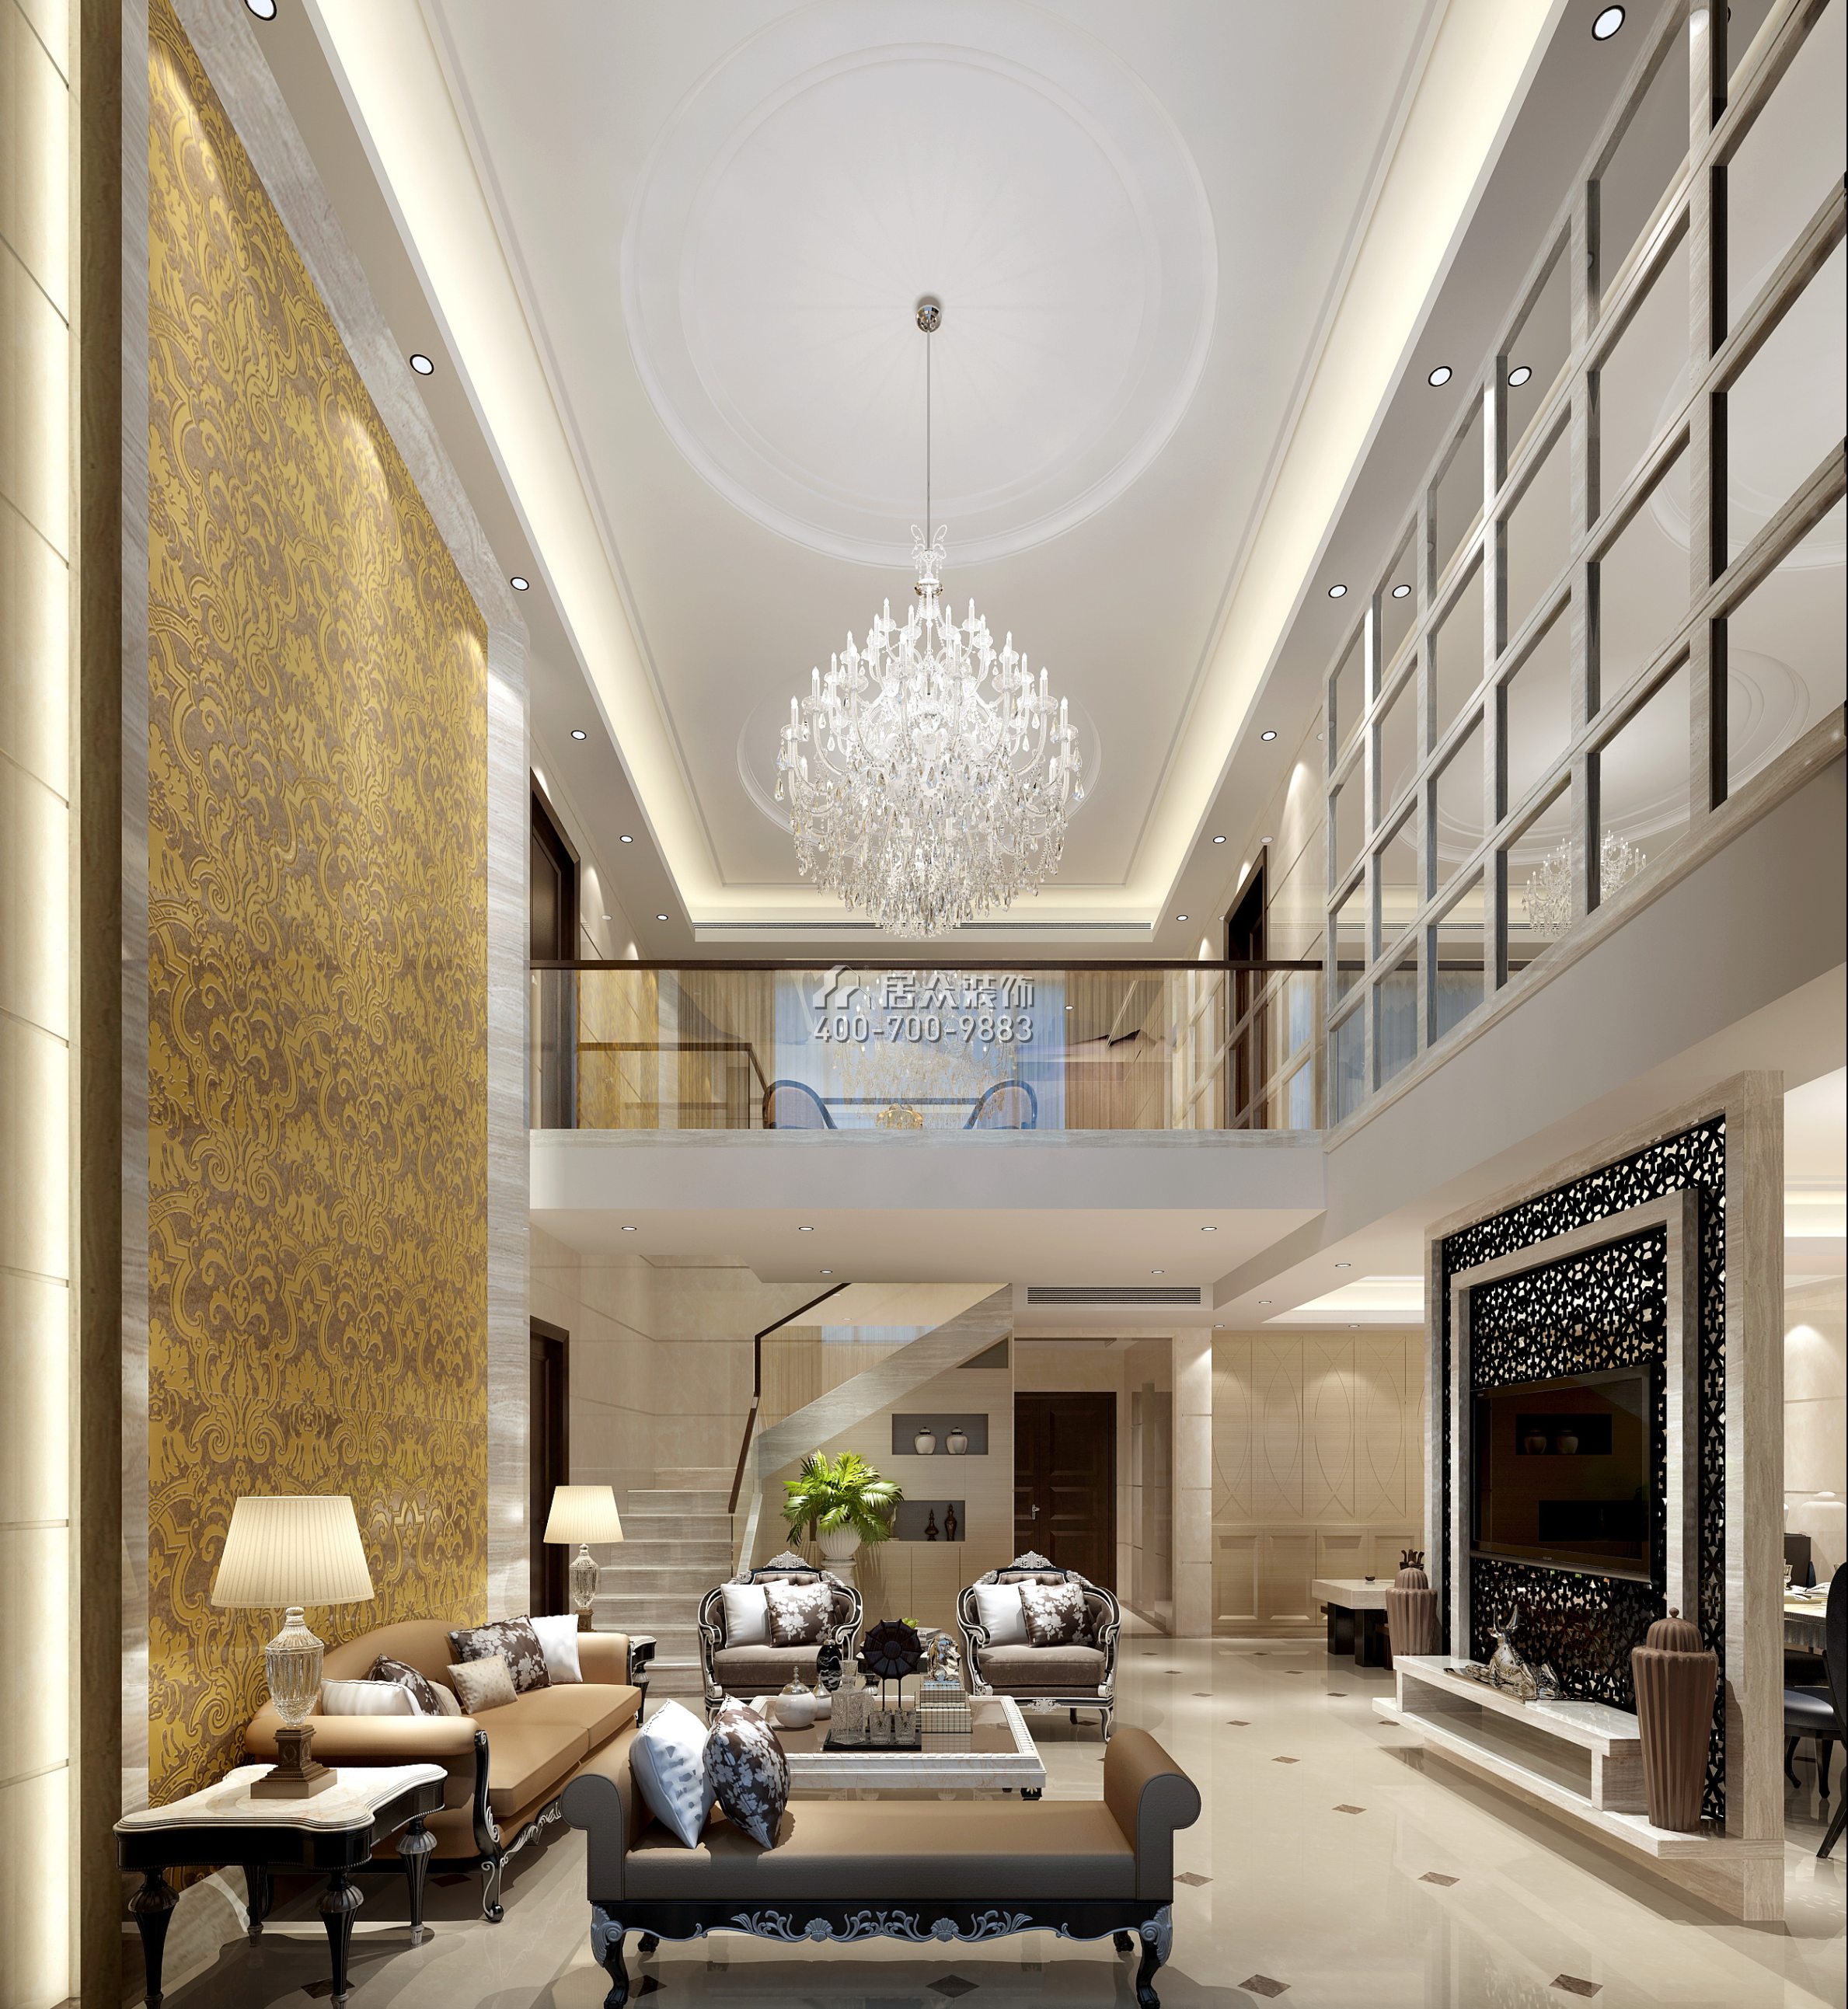 黃埔雅苑二期268平方米新古典風格復式戶型客廳裝修效果圖